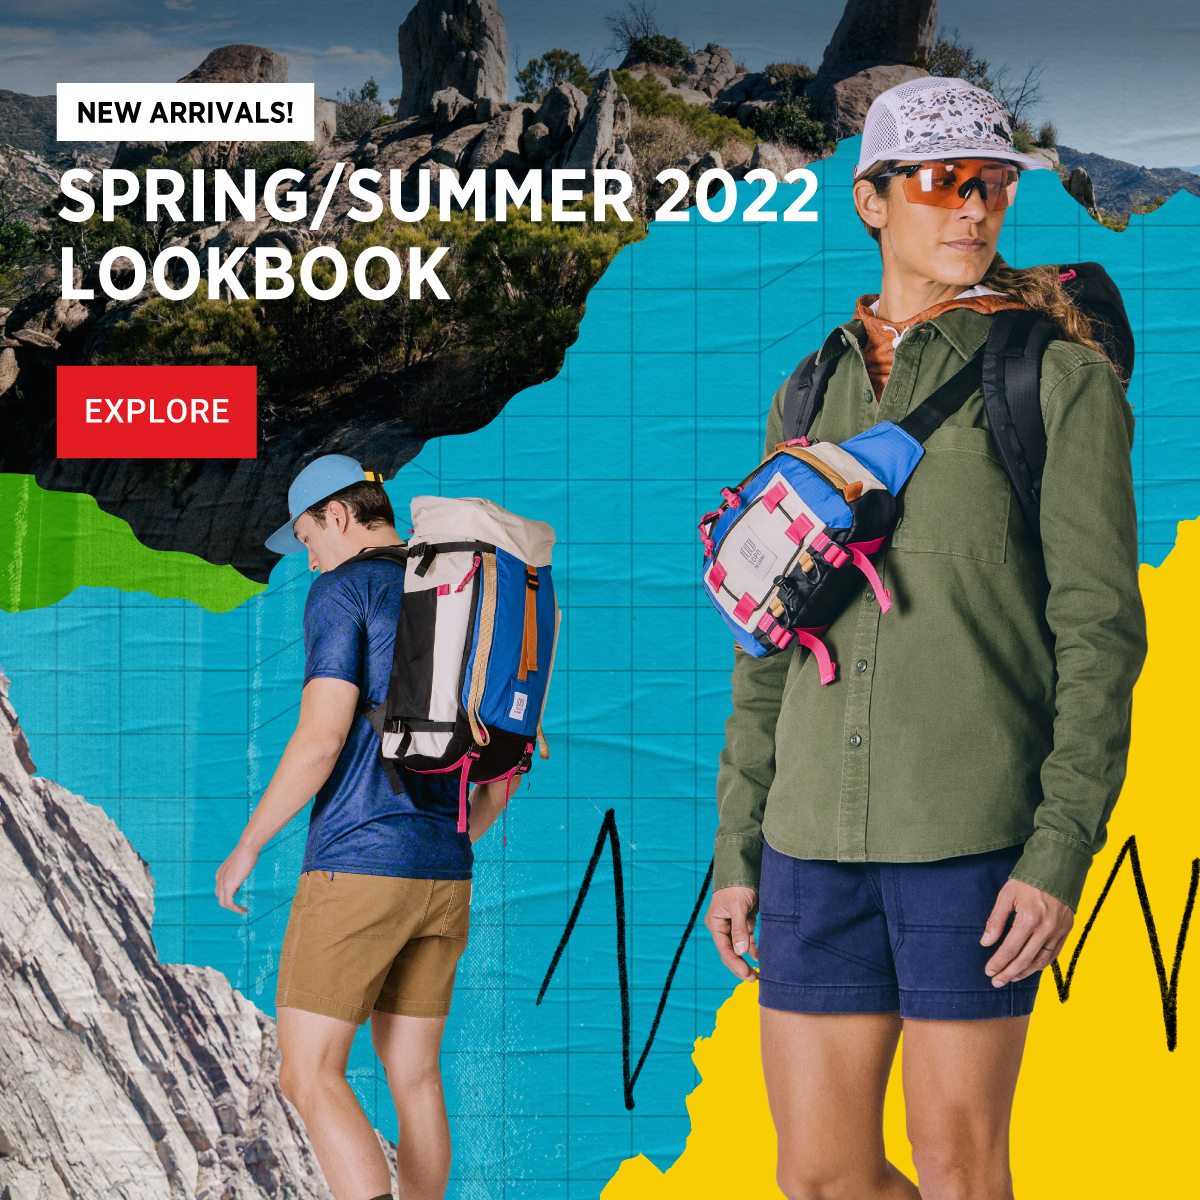 NEW ARRIVALS - SPRING/SUMMER 2022 LOOKBOOK